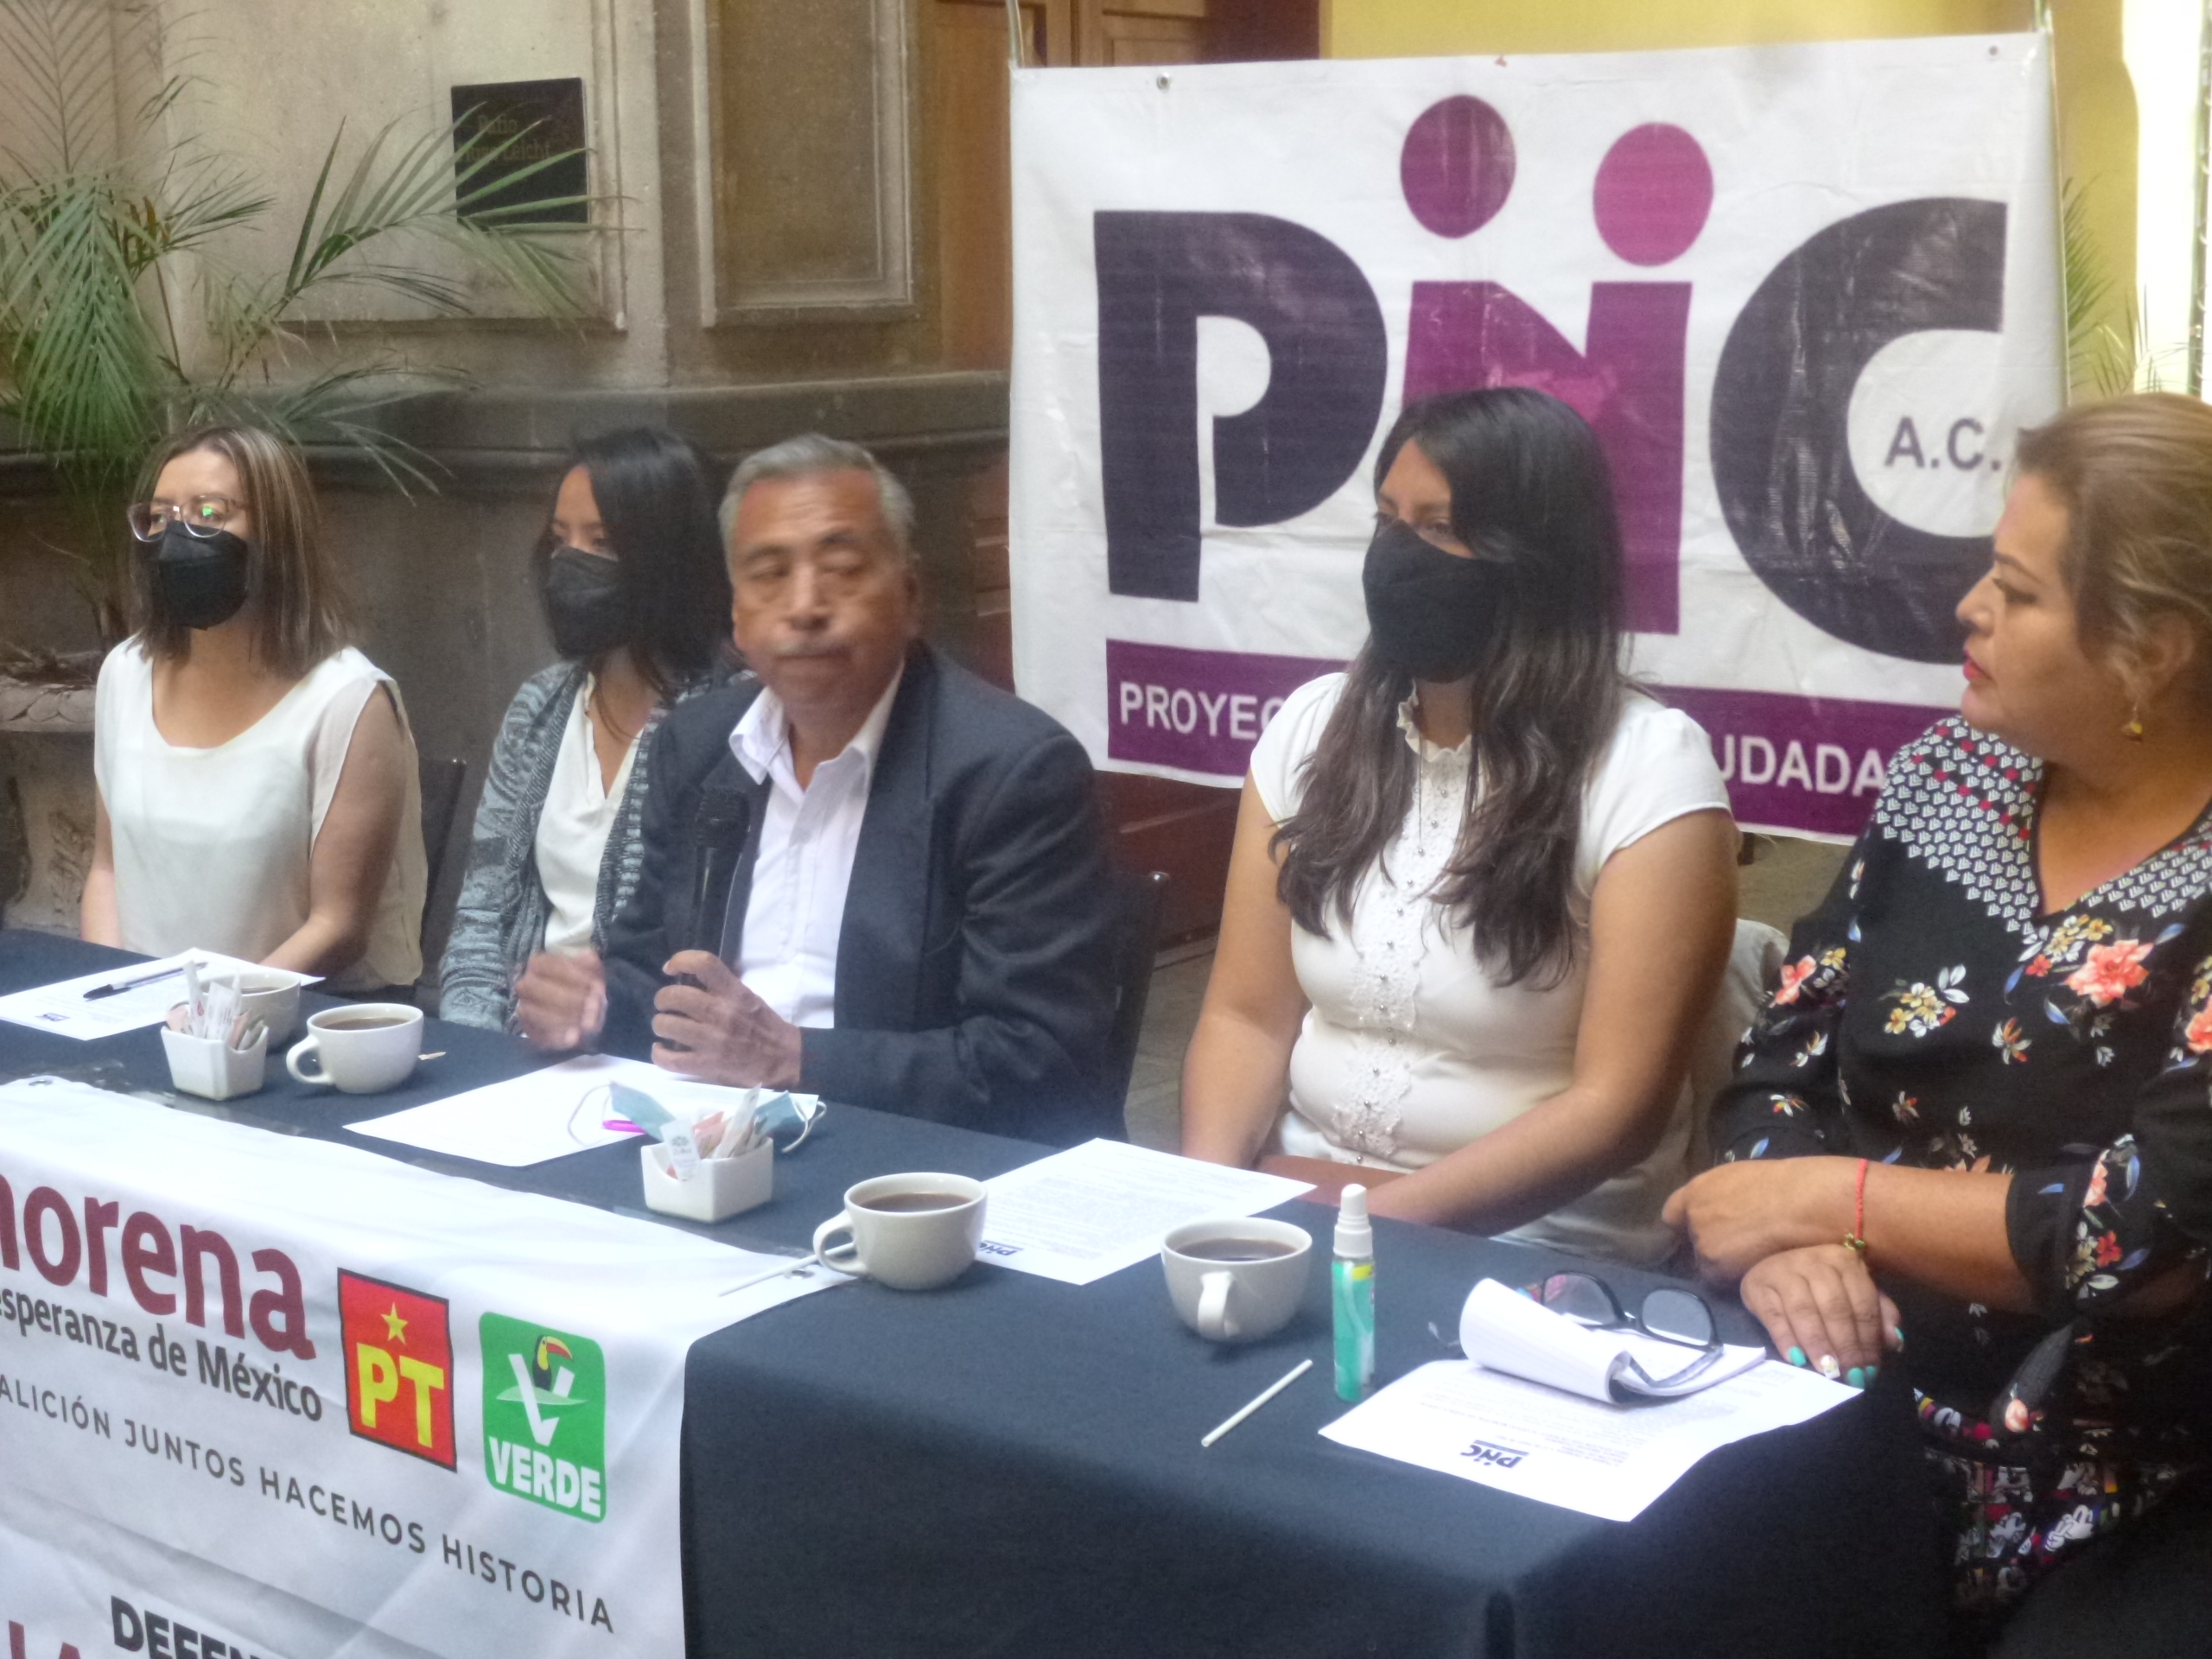 Para Puebla capital Eduardo Rivera Pérez no representa nada nuevo para los poblanos, afirma Norberto Amaya